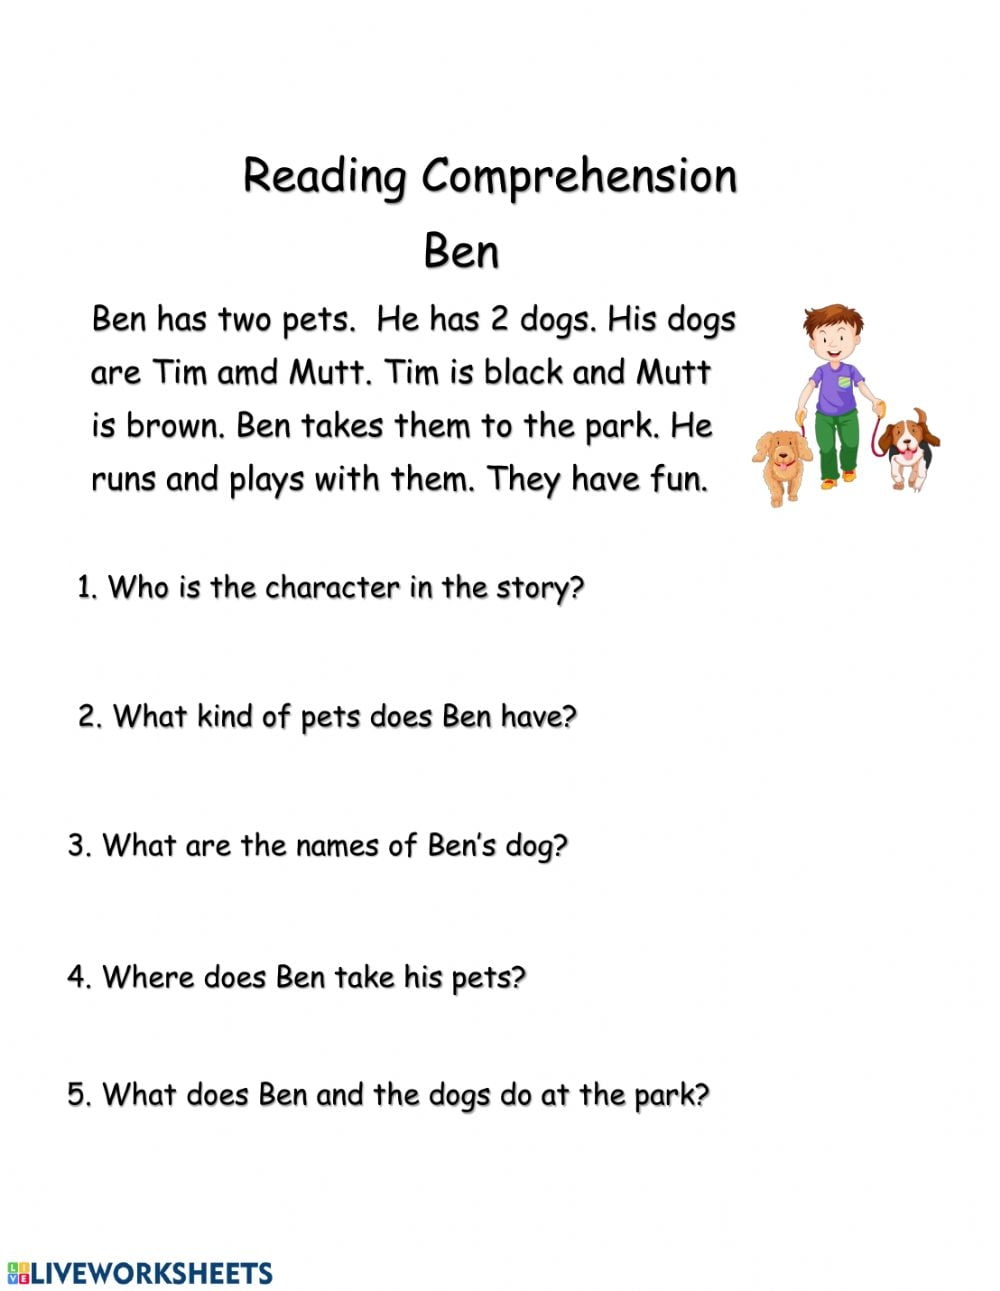 Reading Comprehension Worksheets Grade 1